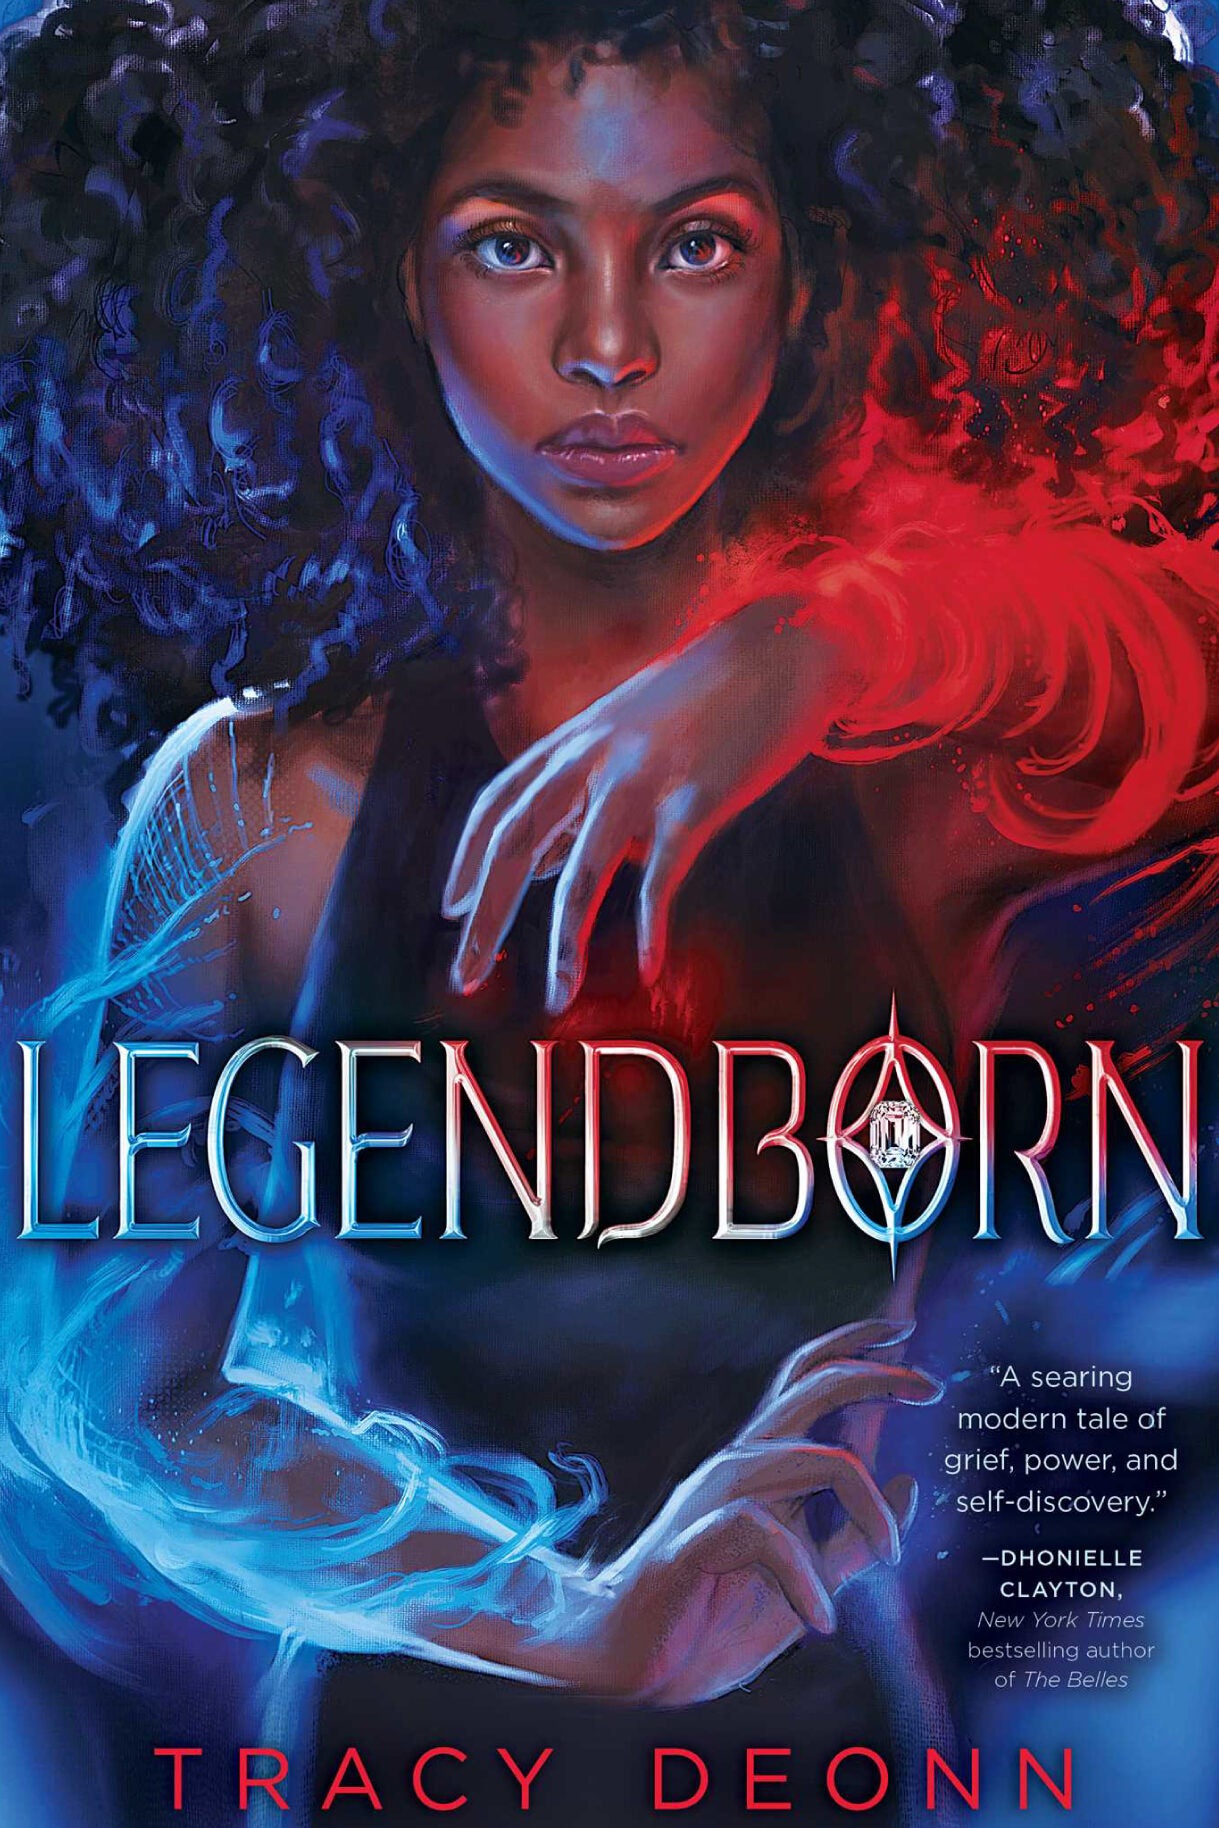 Book cover: "Legendborn."